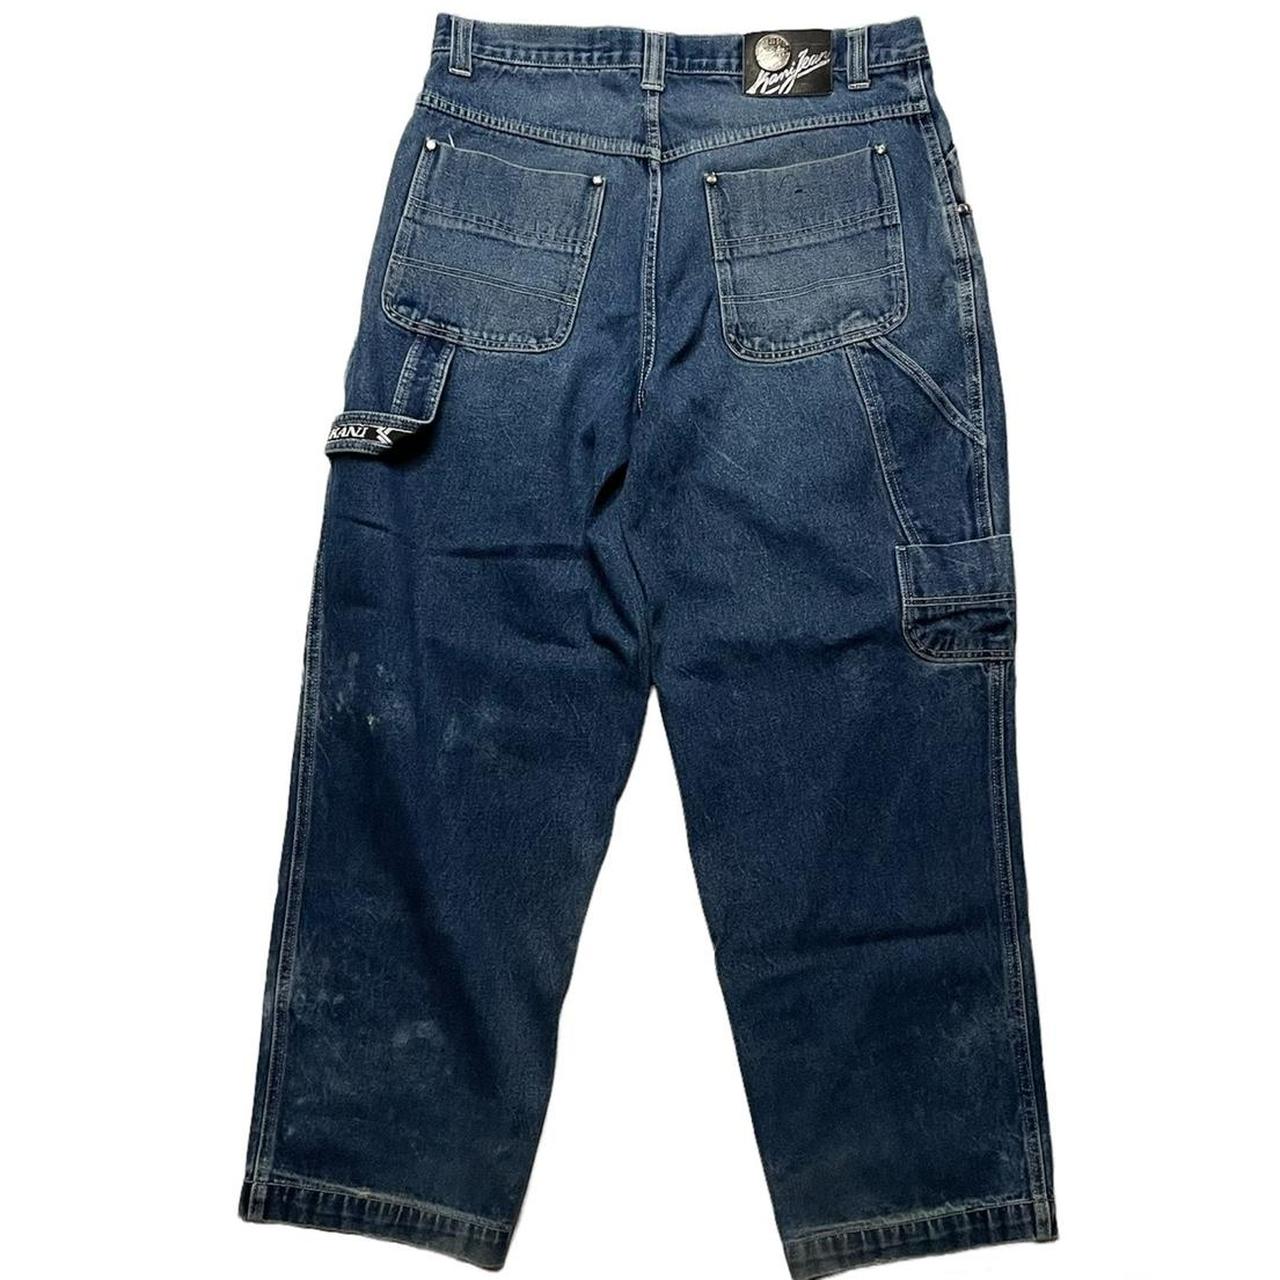 Karl Kani Baggy Jeans Mens 38 X 34 Skater Vintage... - Depop